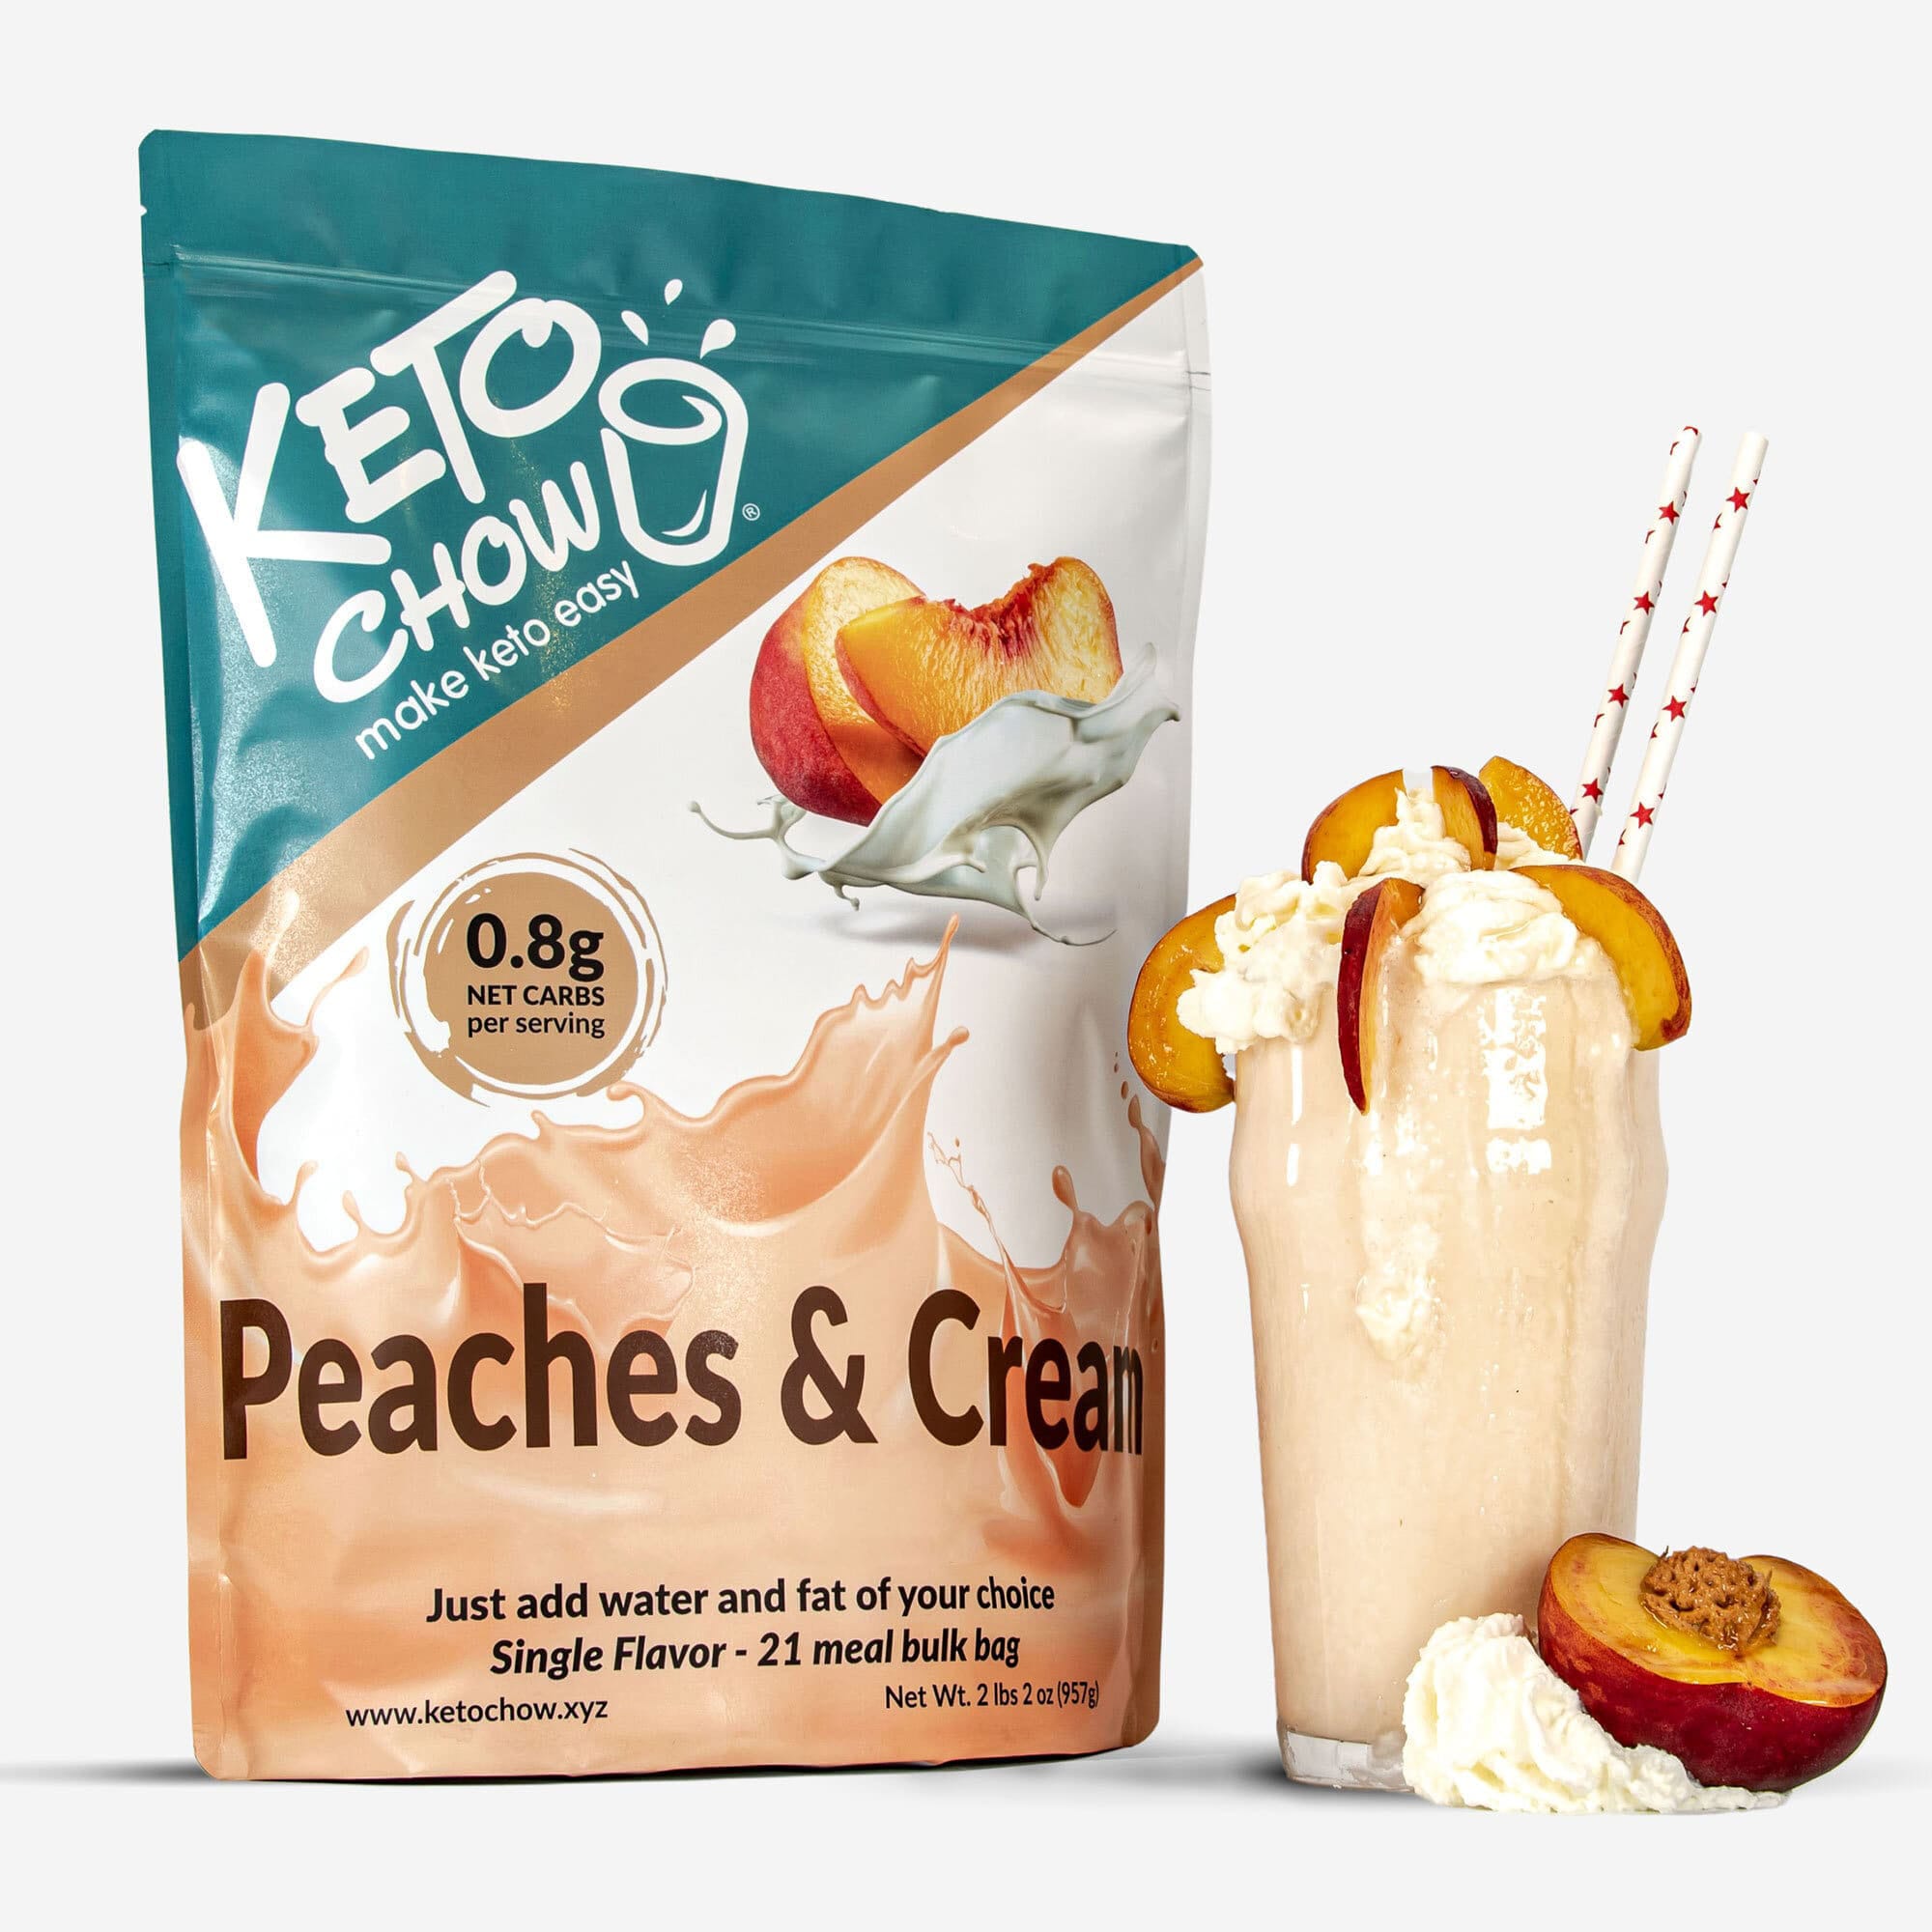 Peaches & Cream Keto Chow